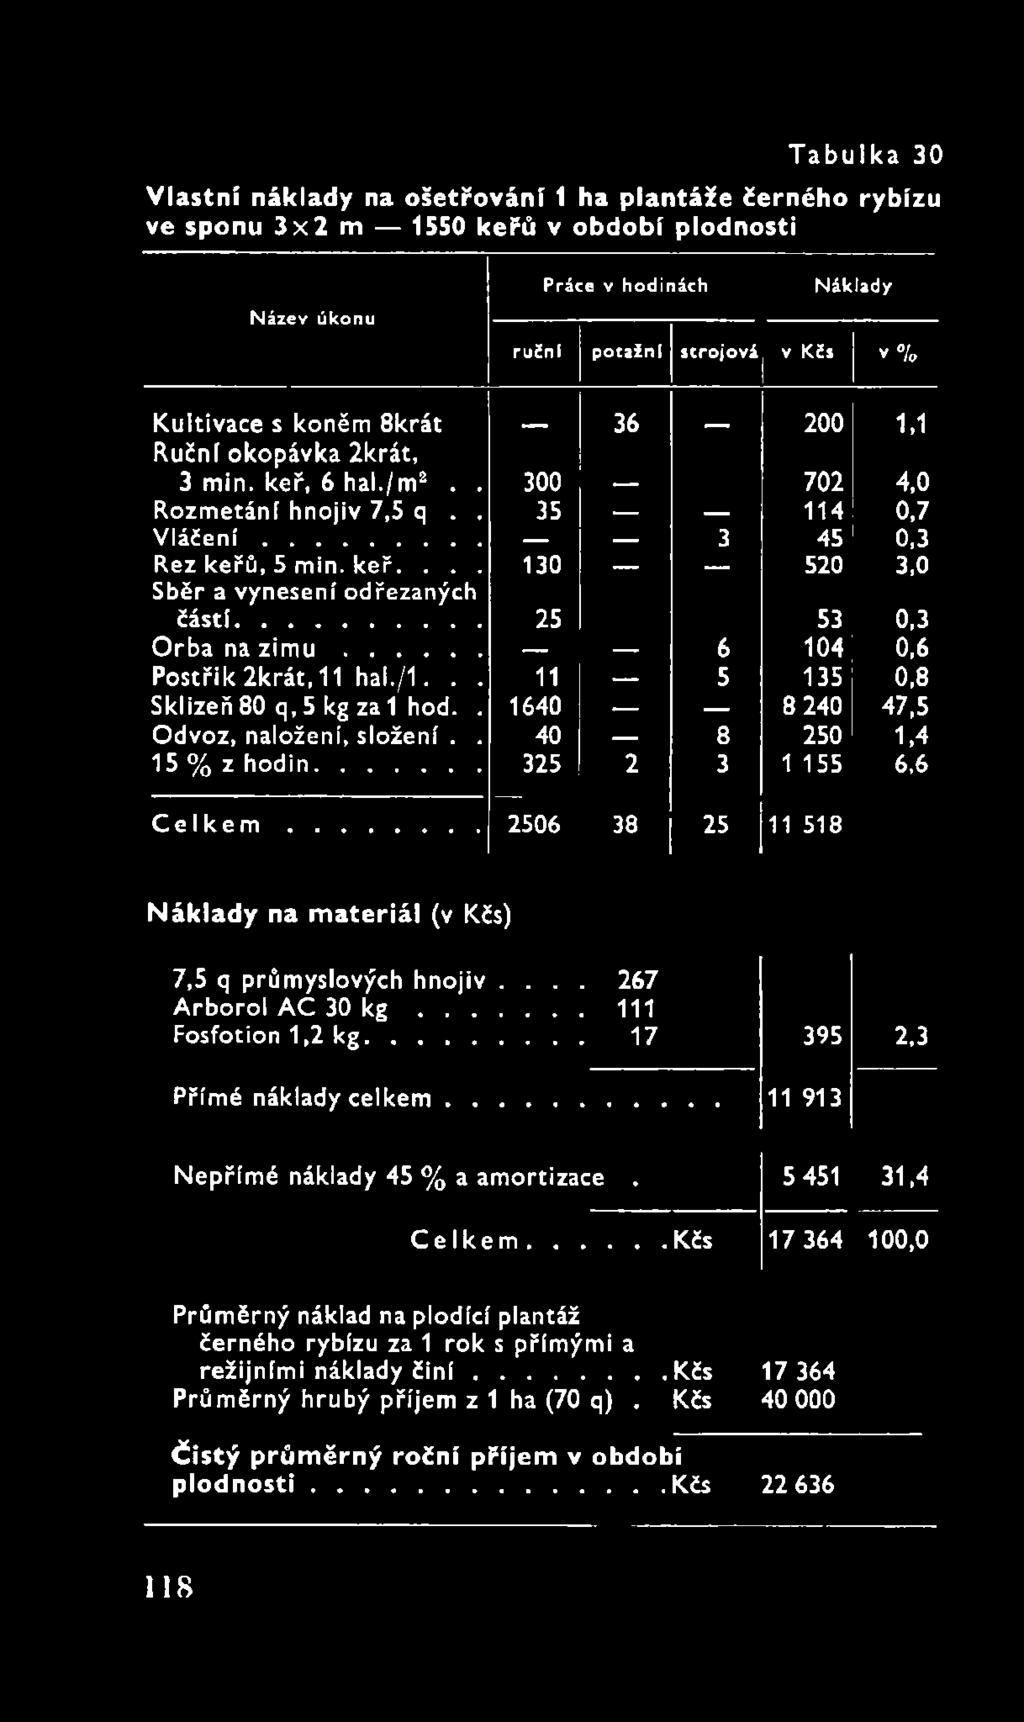 ... 267 Arborol AC 30 k g...111 Fosfotion 1,2 kg... 17 395 2,3 Přímé náklady c e lk e m... 11 913 Nepřímé náklady 45 % a amortizace. 5 451 31,4 C e lk e m.